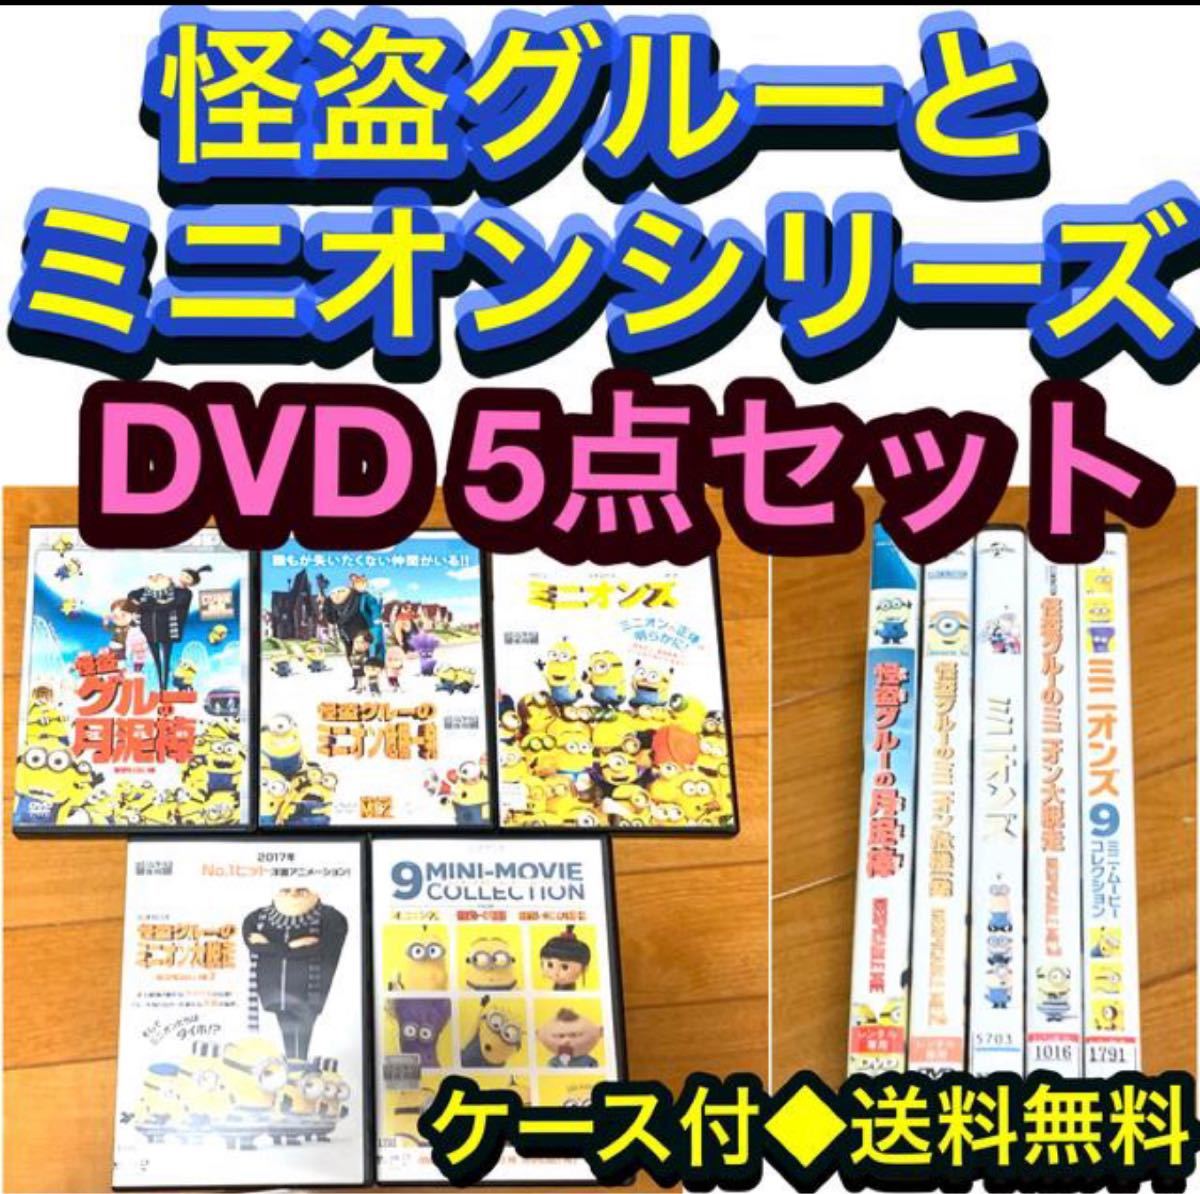 【送料無料】怪盗グルーとミニオンシリーズ DVD 5点セット